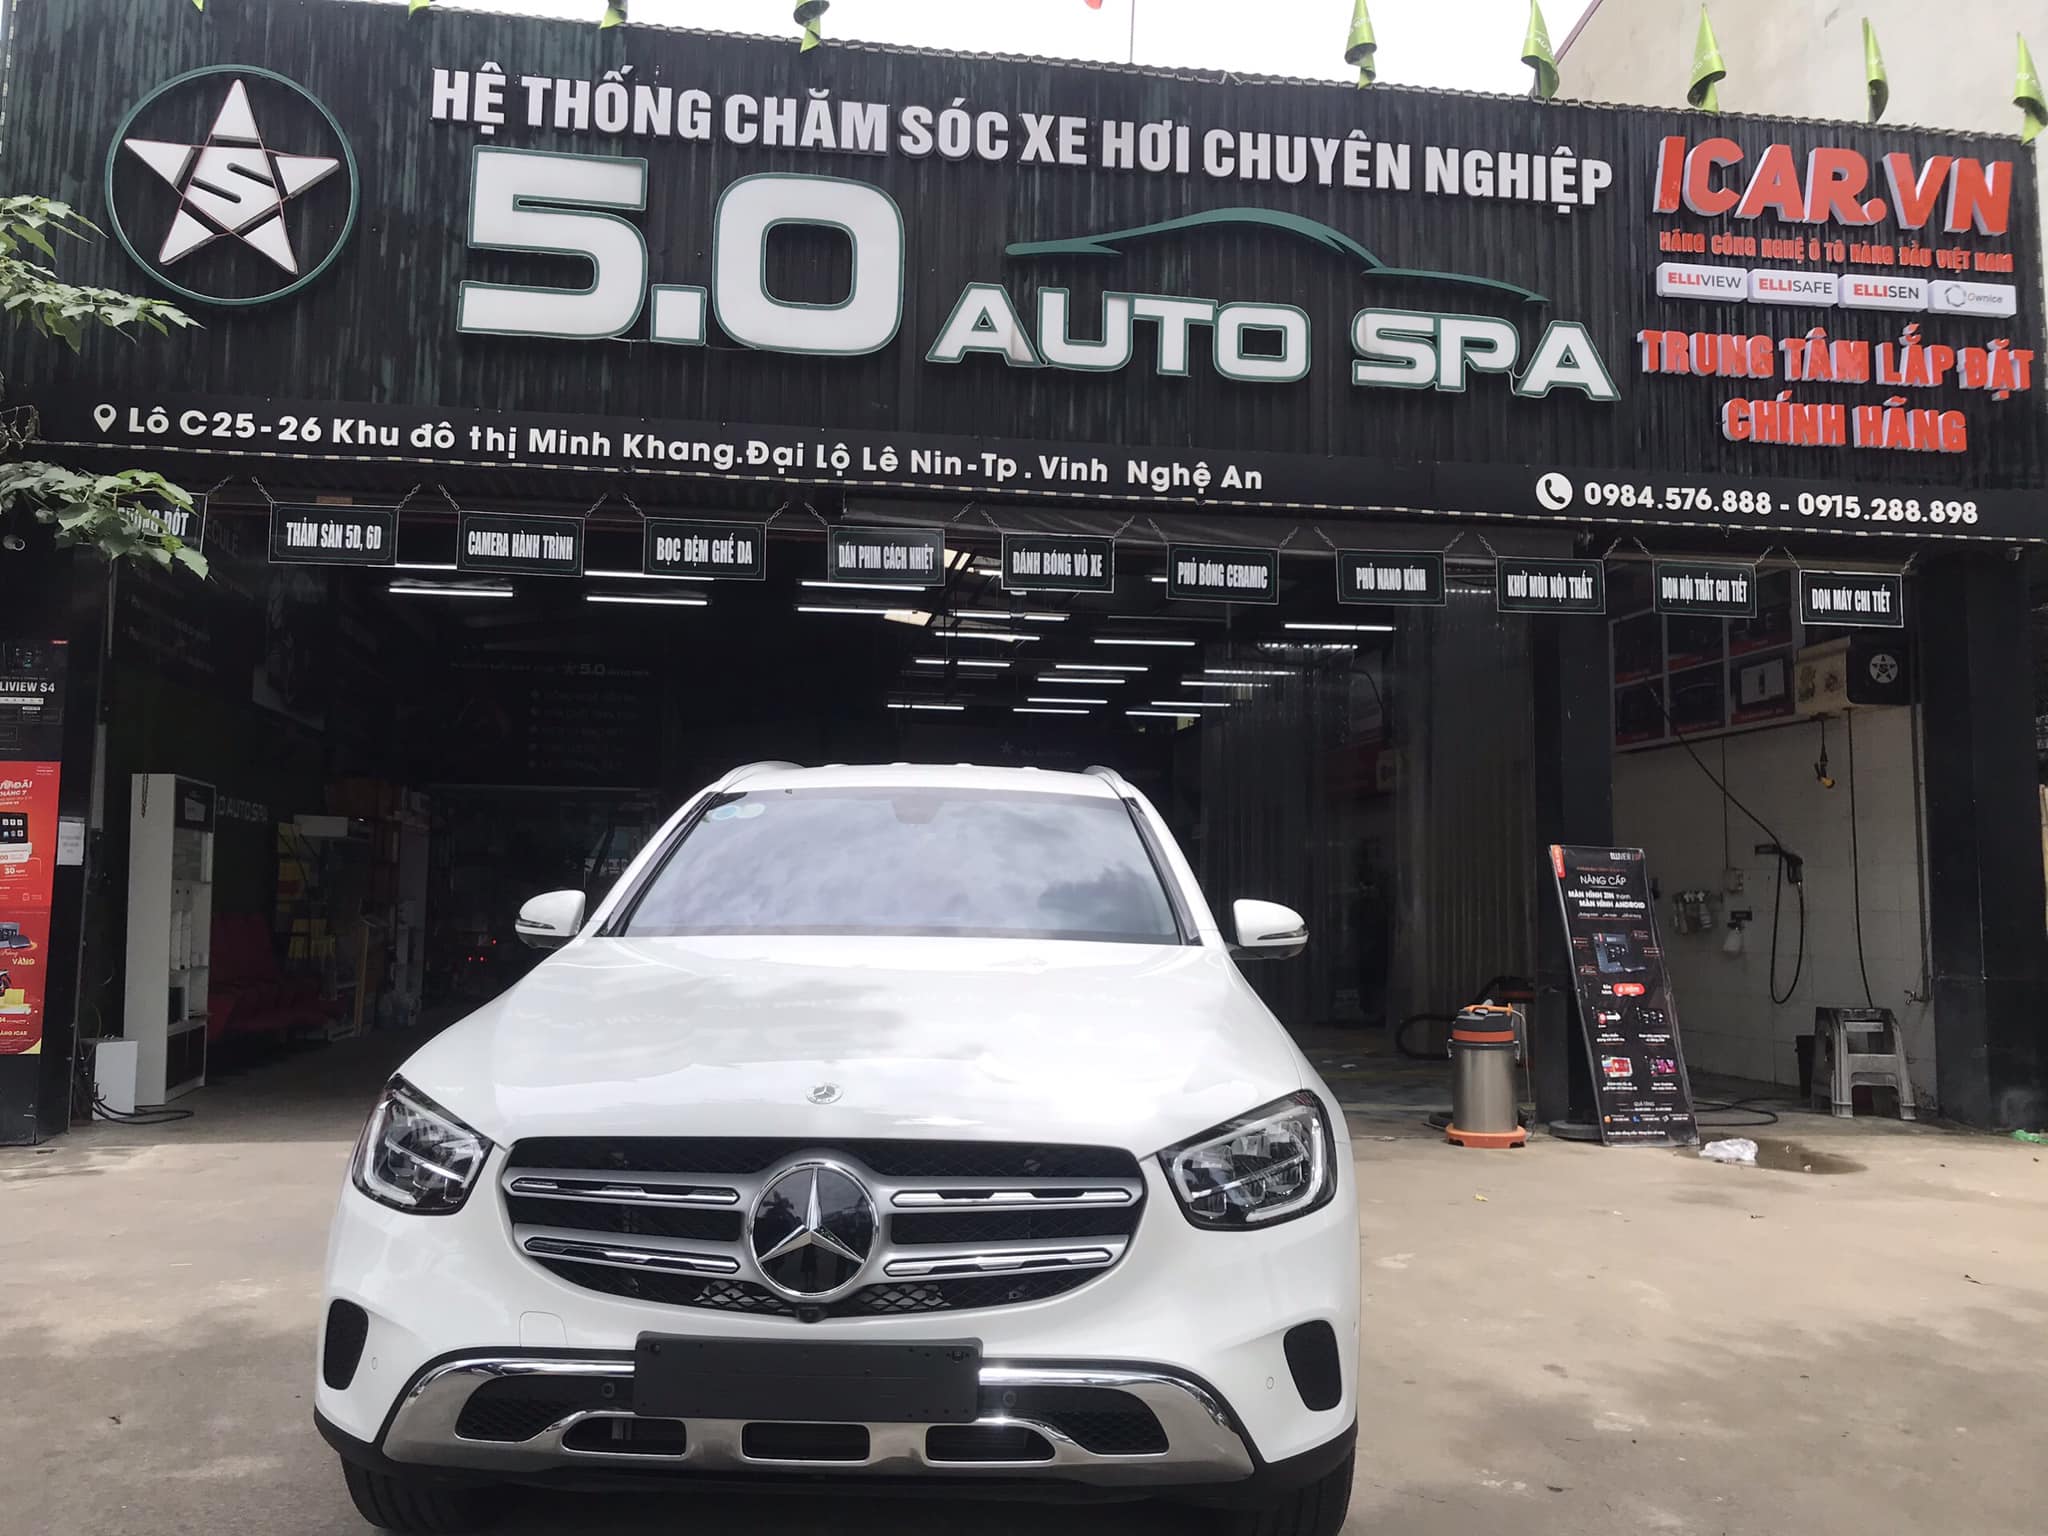 5.0 Auto Spa – Đại lý bán hàng vật liệu cách âm SIP tại Nghệ An